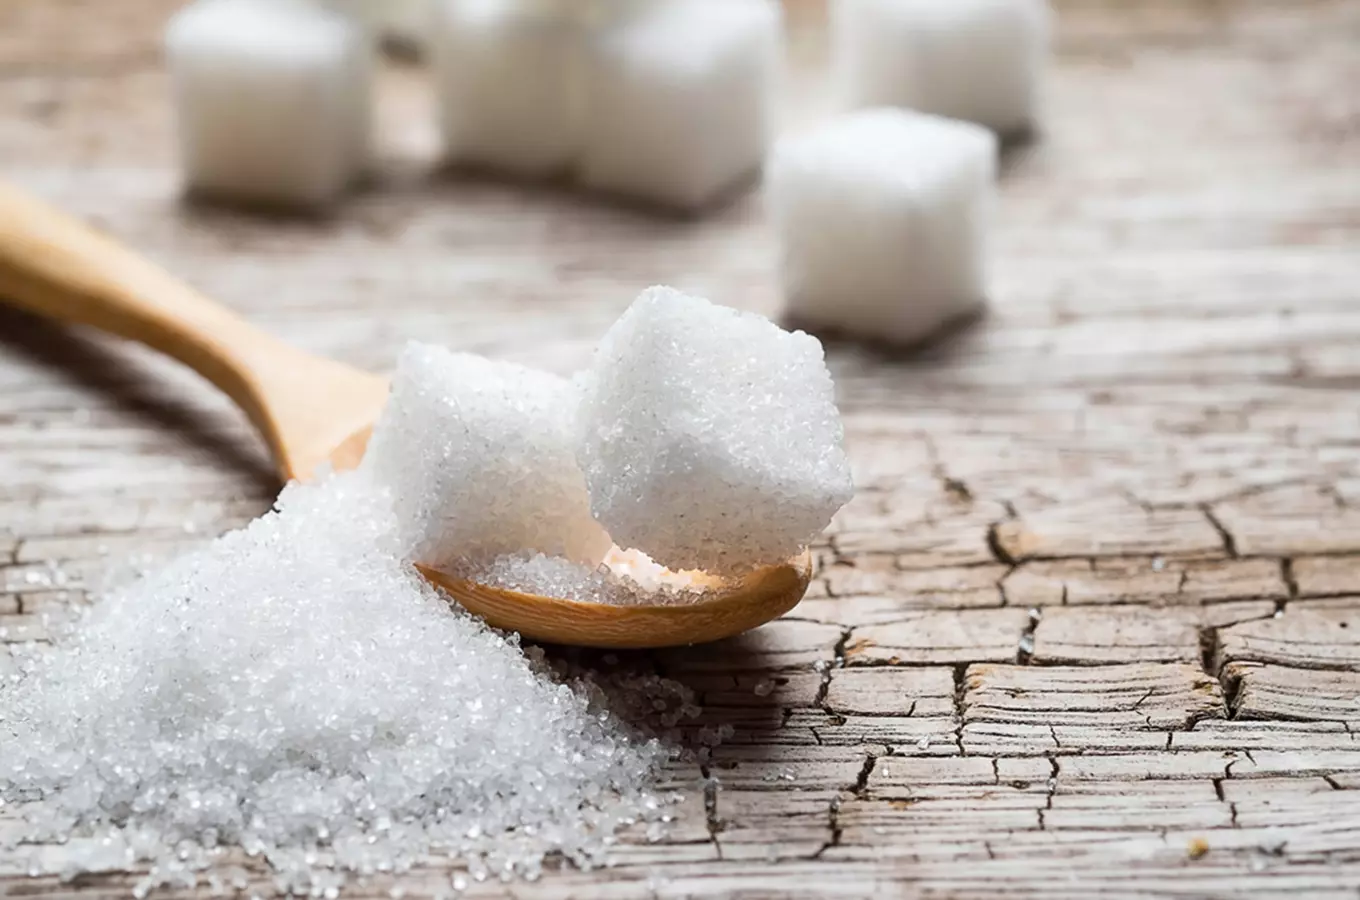 Tradice: putování po sladkých stopách českého cukru do cukrovaru Dobrovice